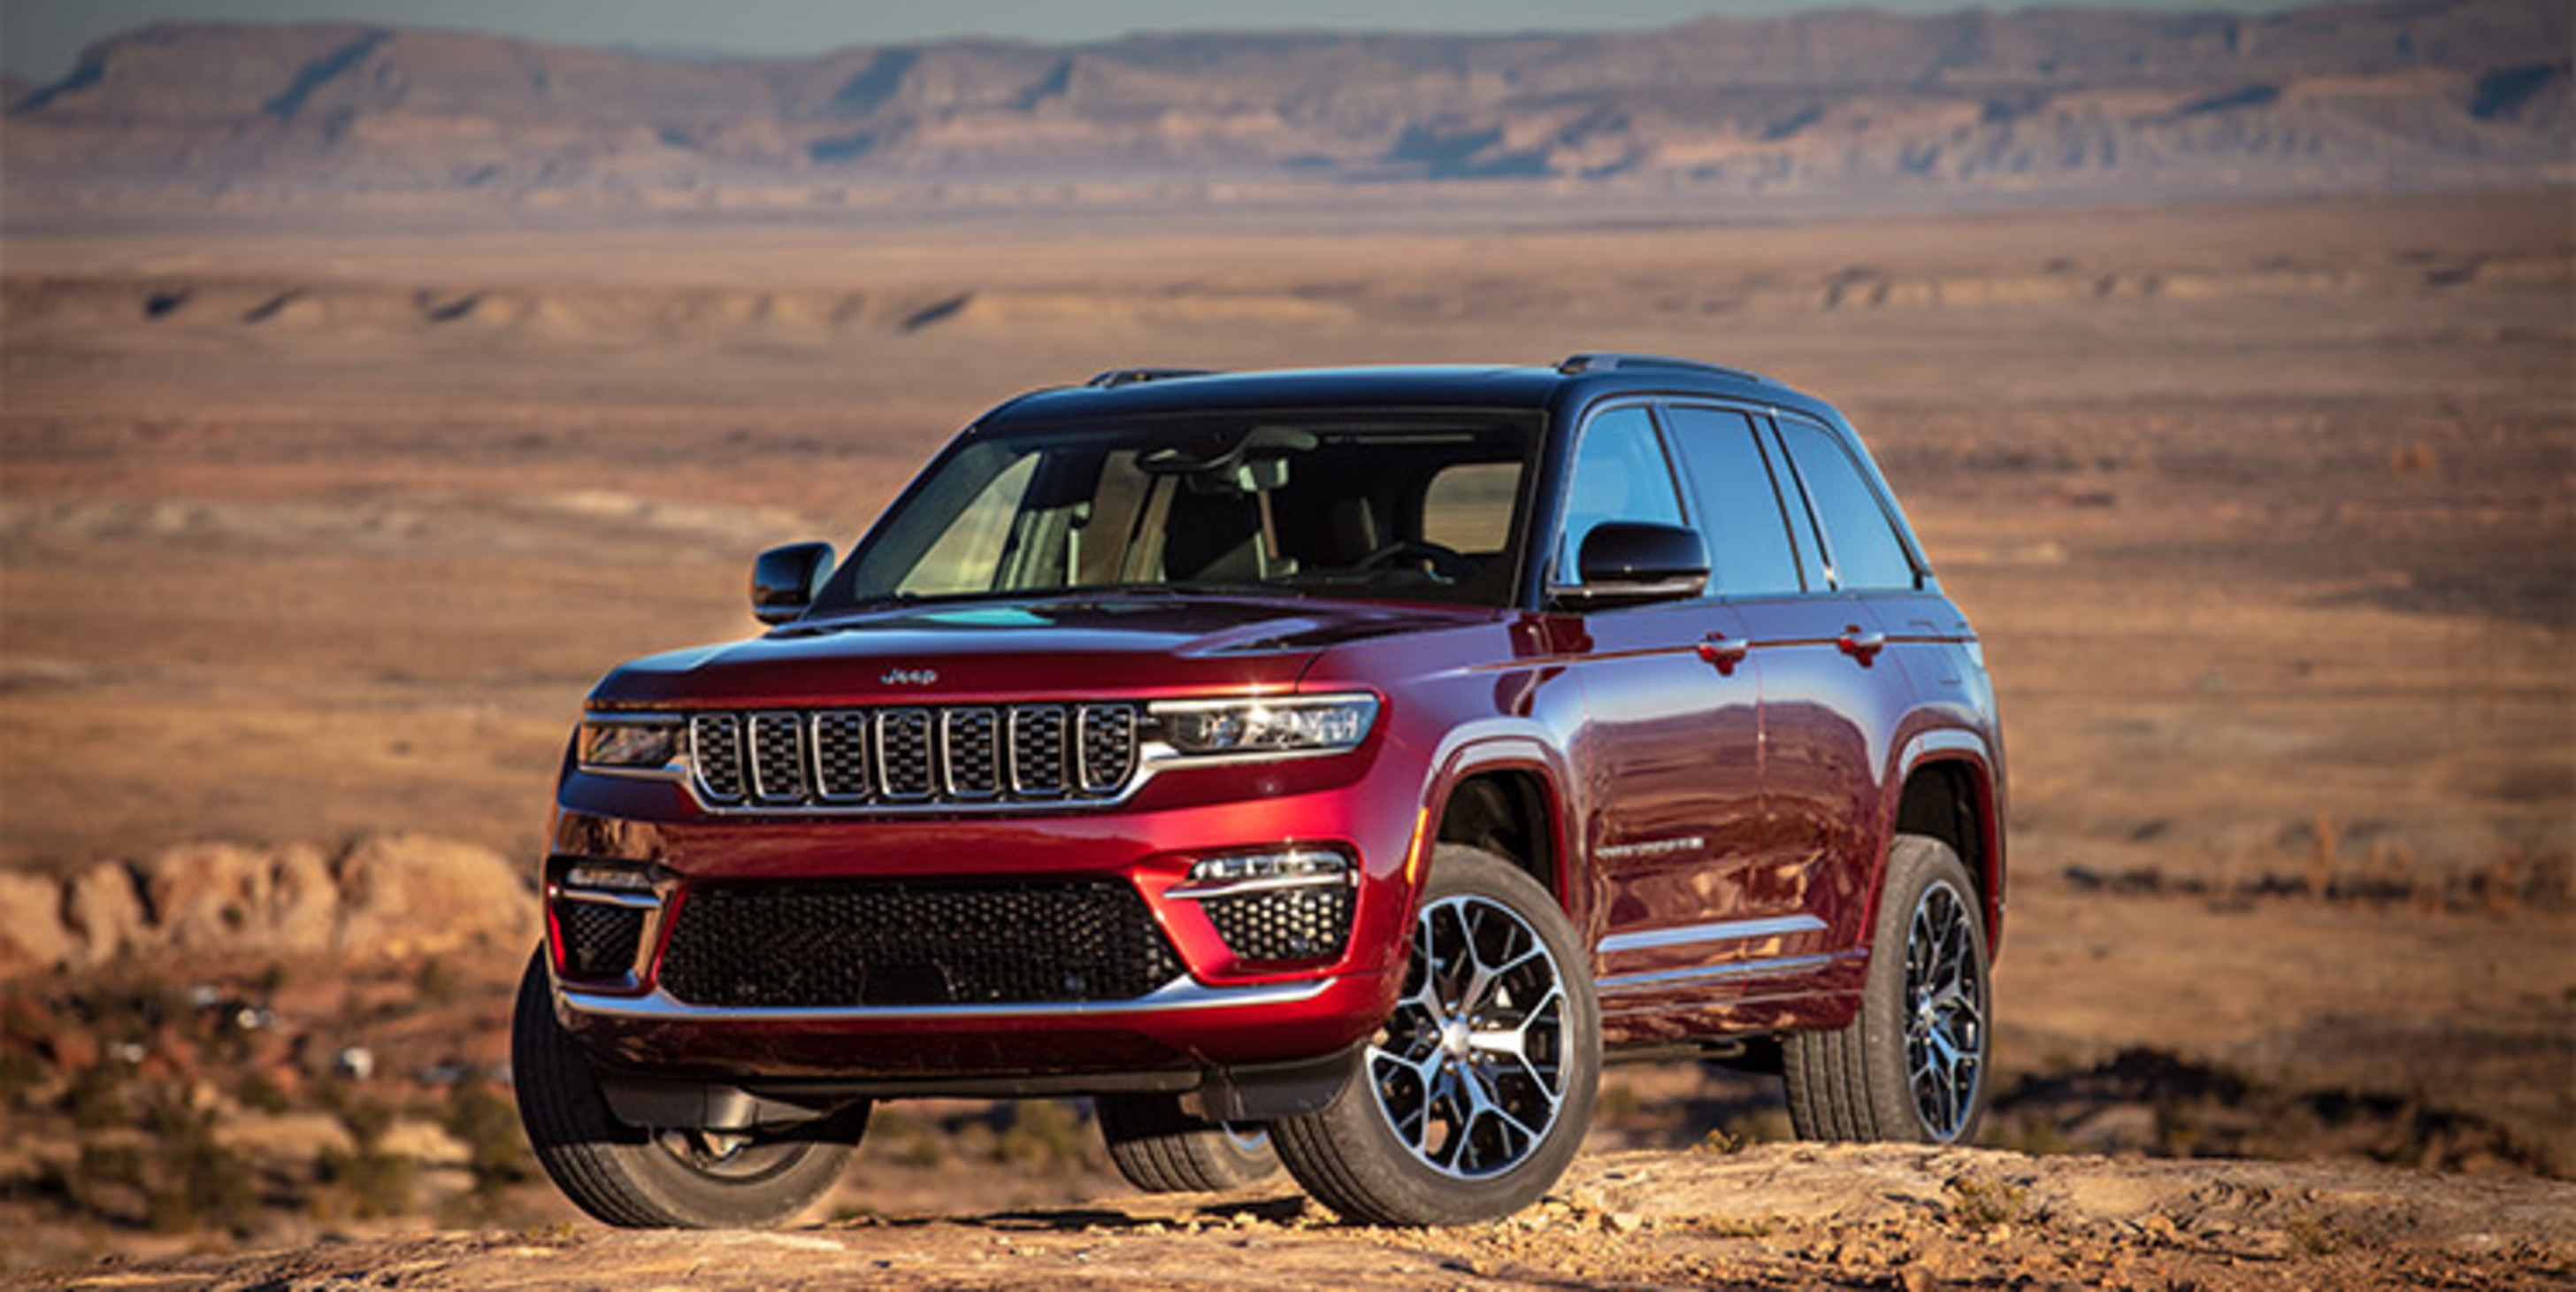 Jeep Grand Cherokee rouge 2023 garé au sommet d’une colline sur fond de désert.